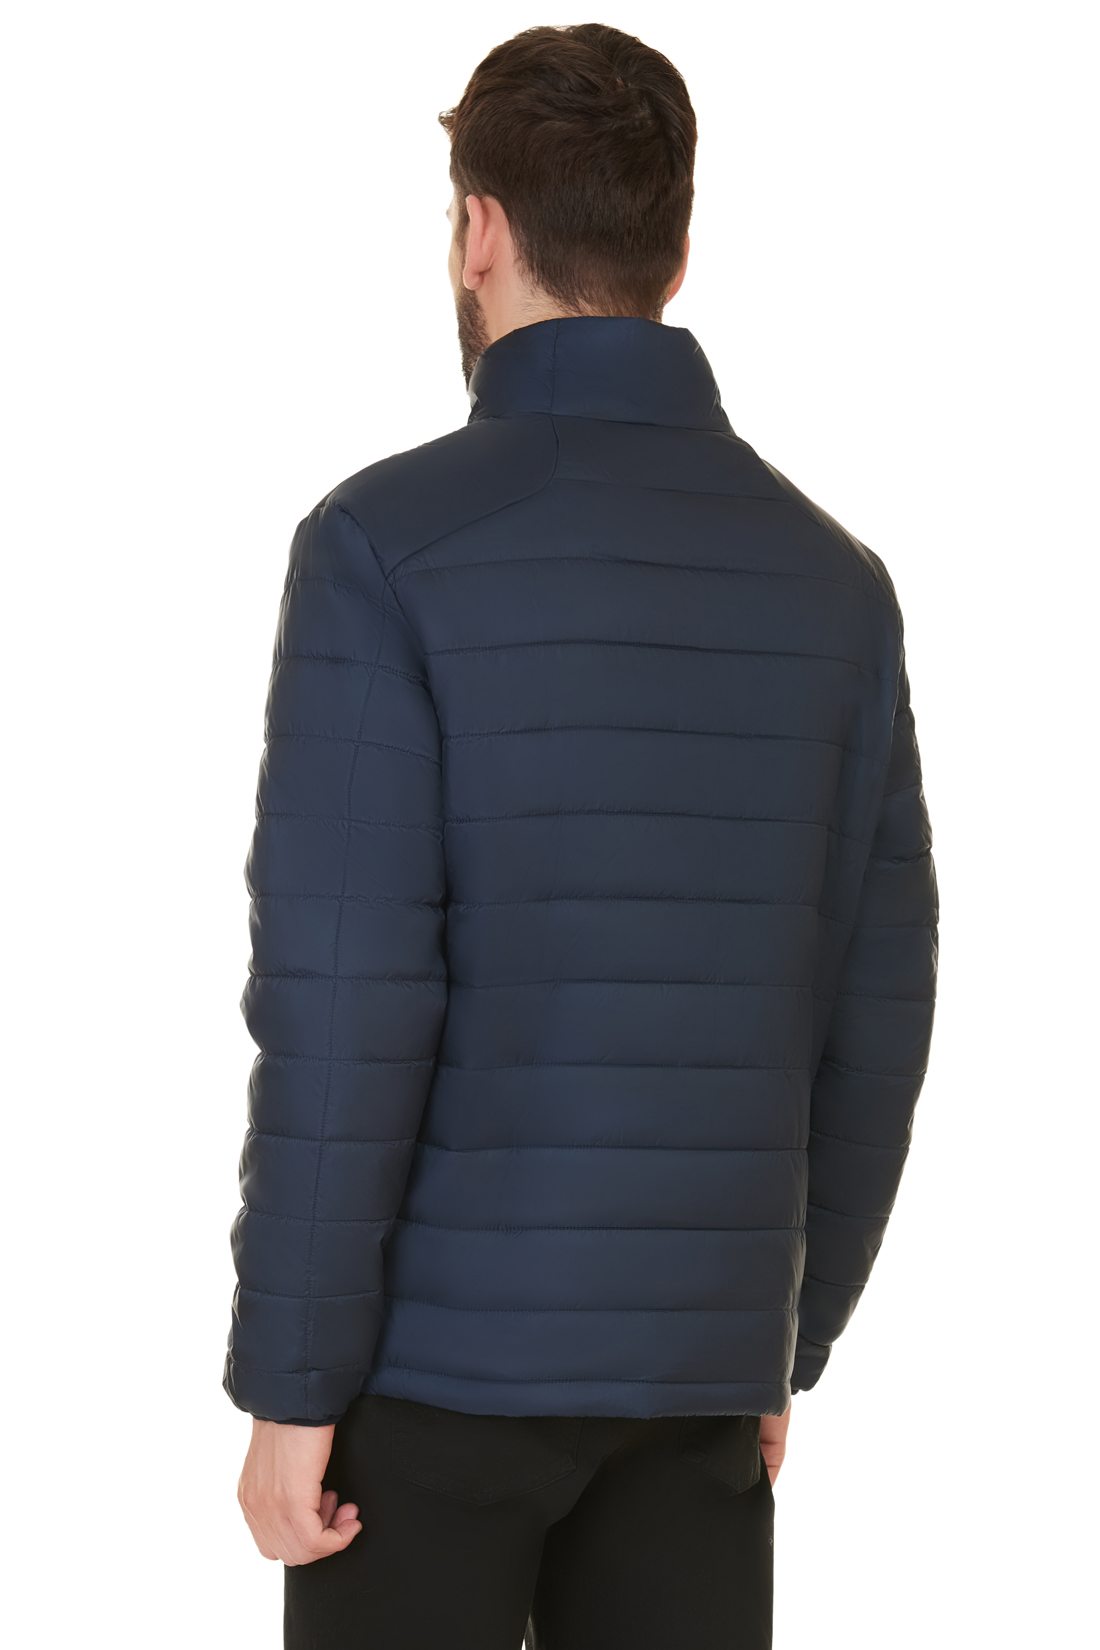 Базовая куртка (арт. baon B537701), размер XXL, цвет синий Базовая куртка (арт. baon B537701) - фото 2